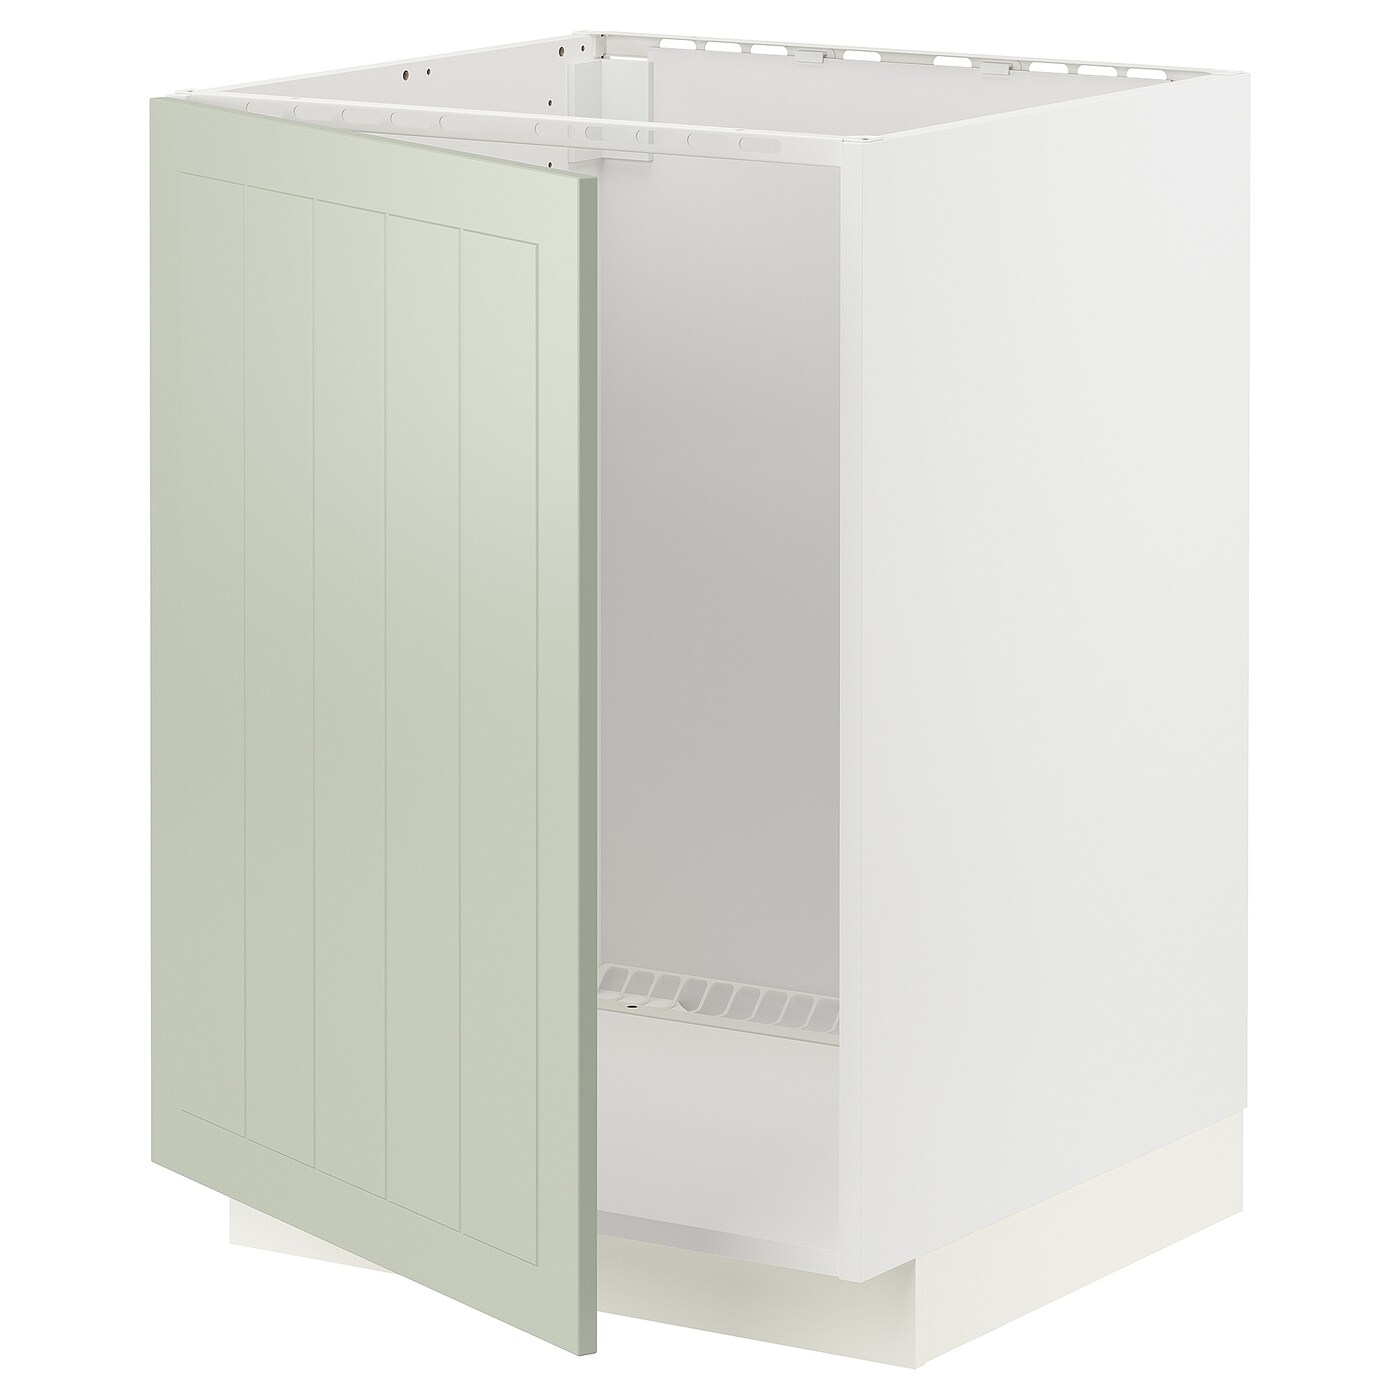 Напольный шкаф - METOD IKEA/ МЕТОД ИКЕА,  88х60 см, белый/светло-зеленый